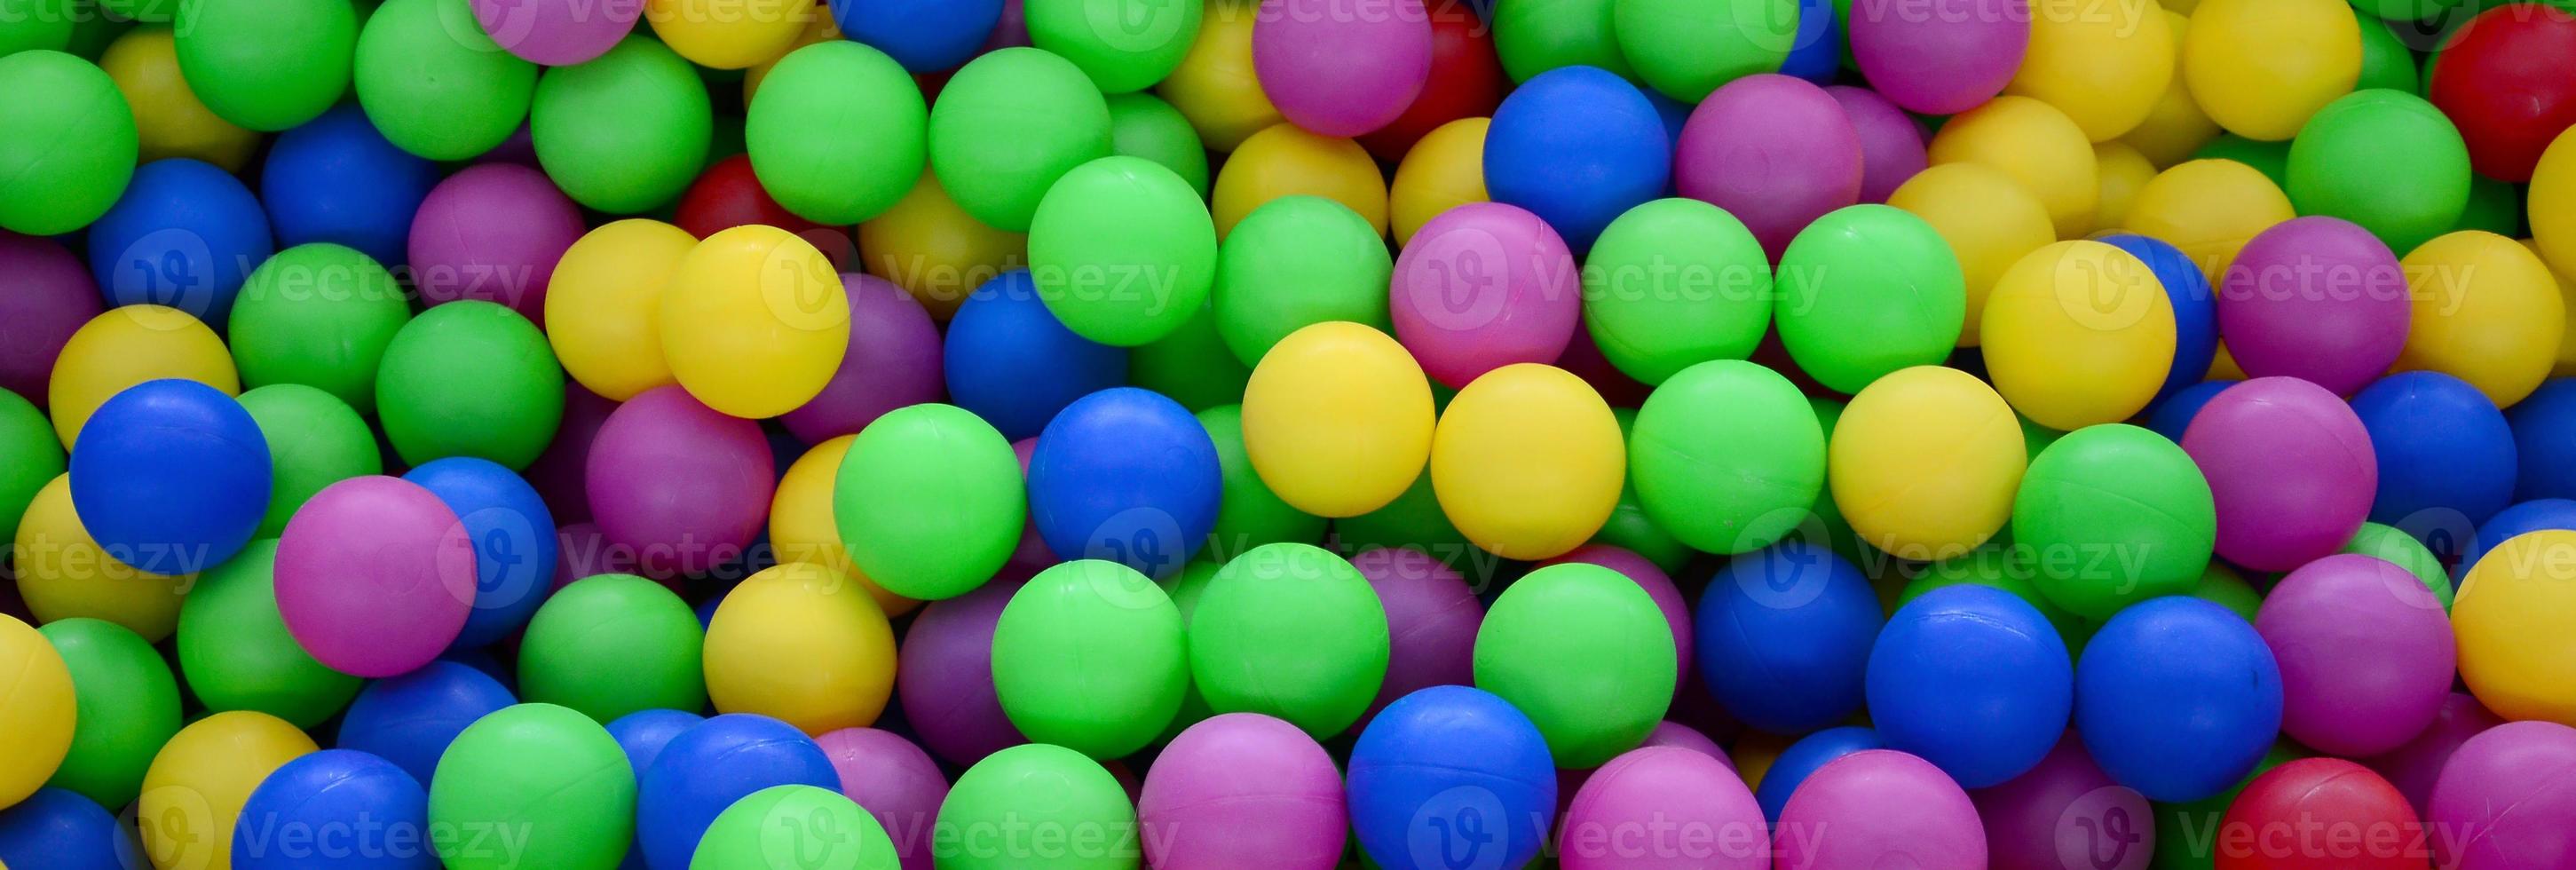 piscine pour s'amuser et sauter dans des boules en plastique colorées photo